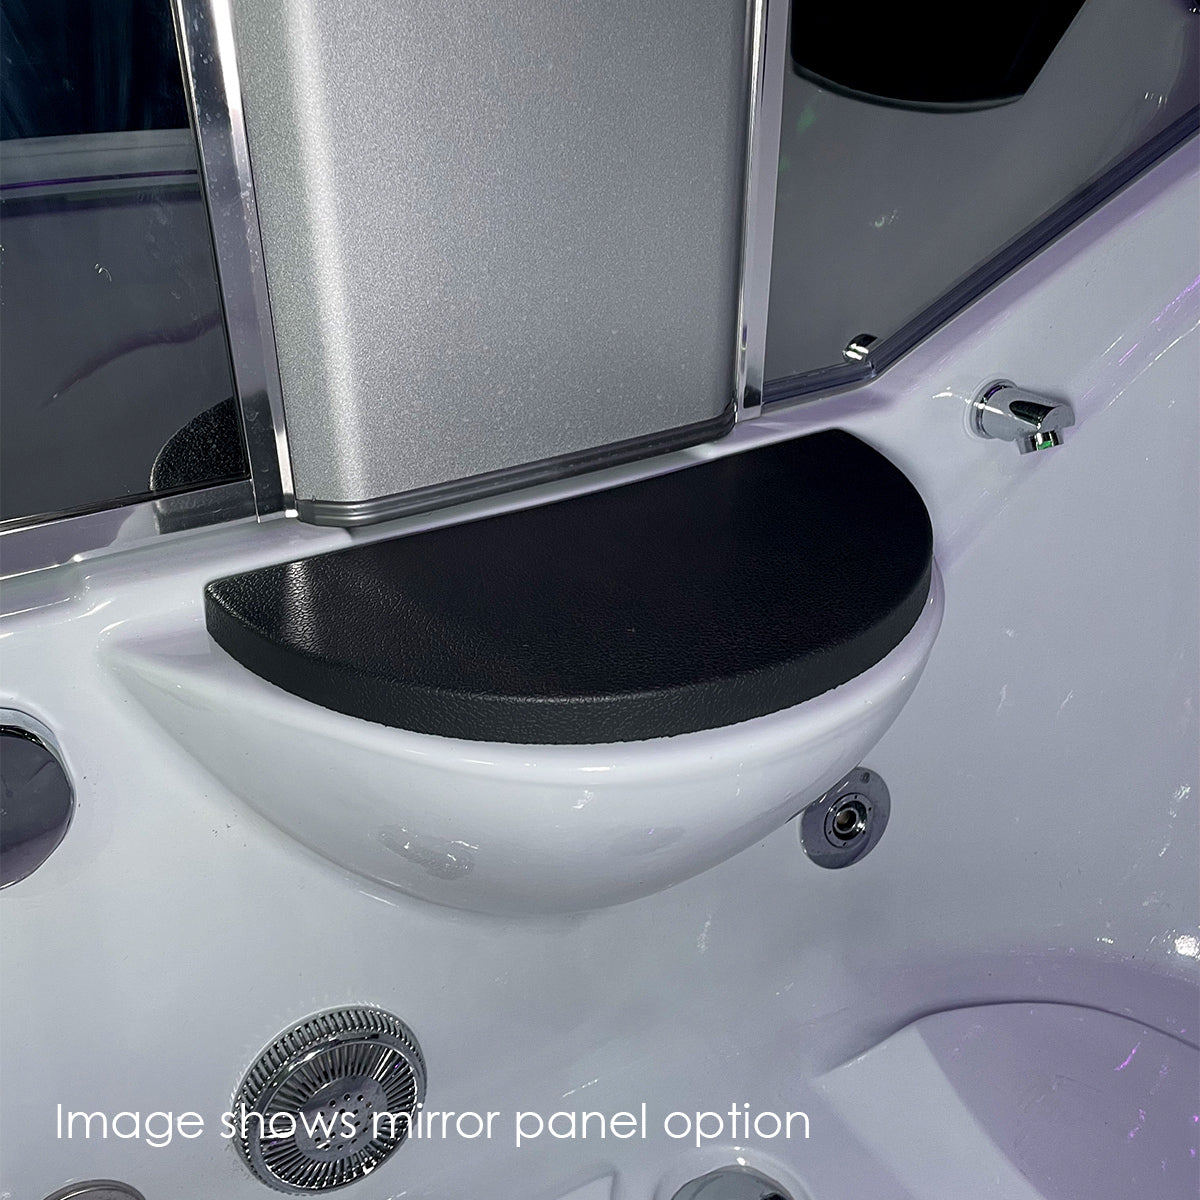 Insignia 1500SL - 3rd Generation Steam Shower Bath | 1500 x 850 - Nuovo Luxury